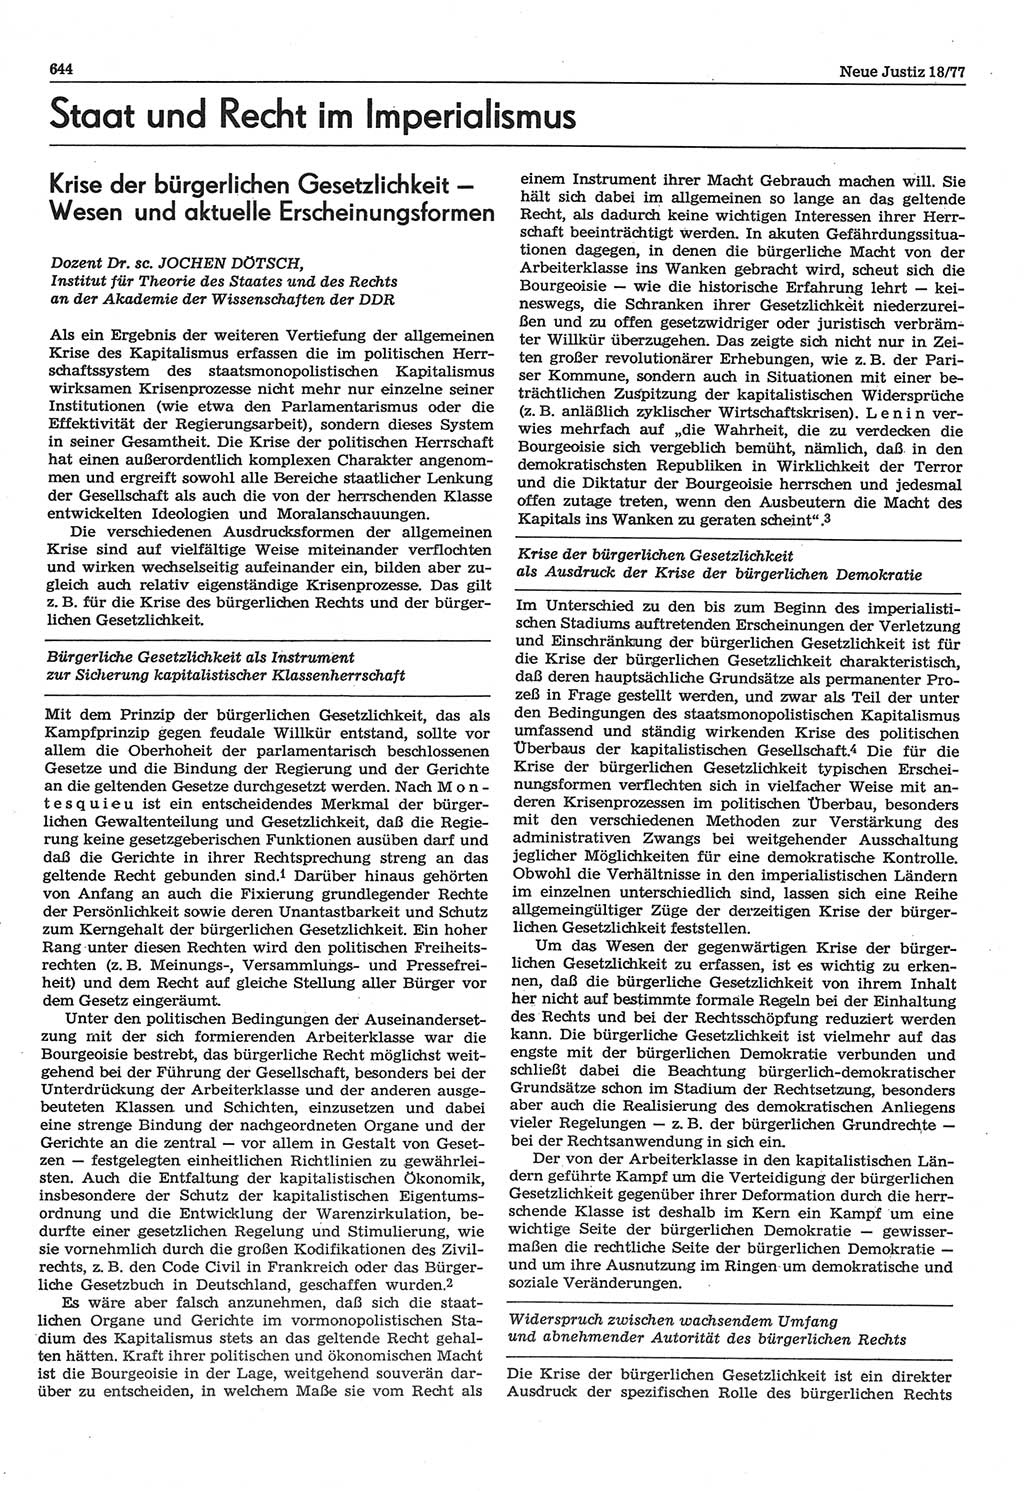 Neue Justiz (NJ), Zeitschrift für Recht und Rechtswissenschaft-Zeitschrift, sozialistisches Recht und Gesetzlichkeit, 31. Jahrgang 1977, Seite 644 (NJ DDR 1977, S. 644)